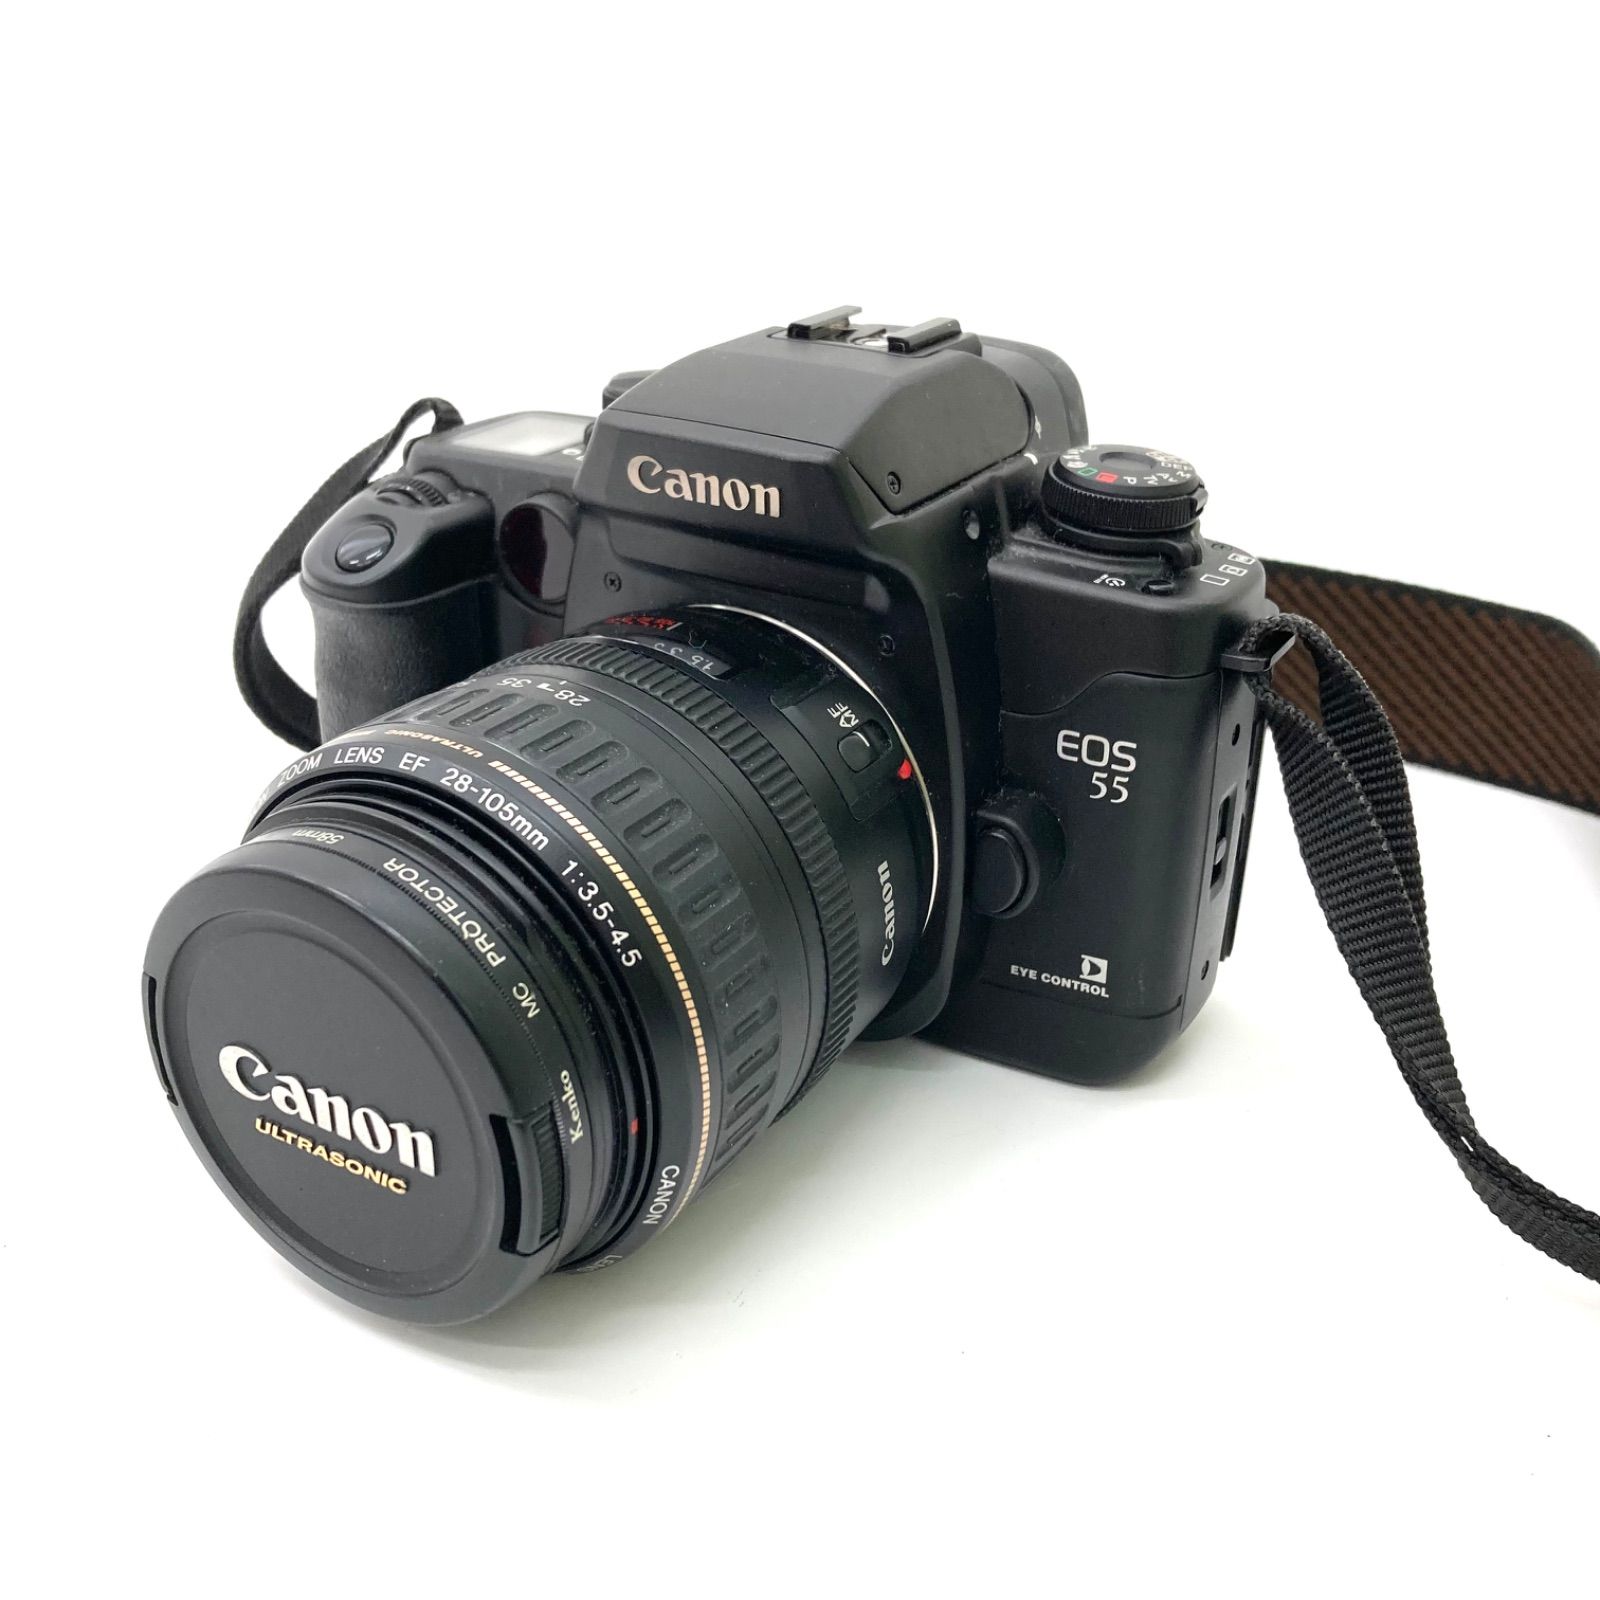 Canon キヤノン EOS55フィルム 一眼レフカメラ - フィルムカメラ